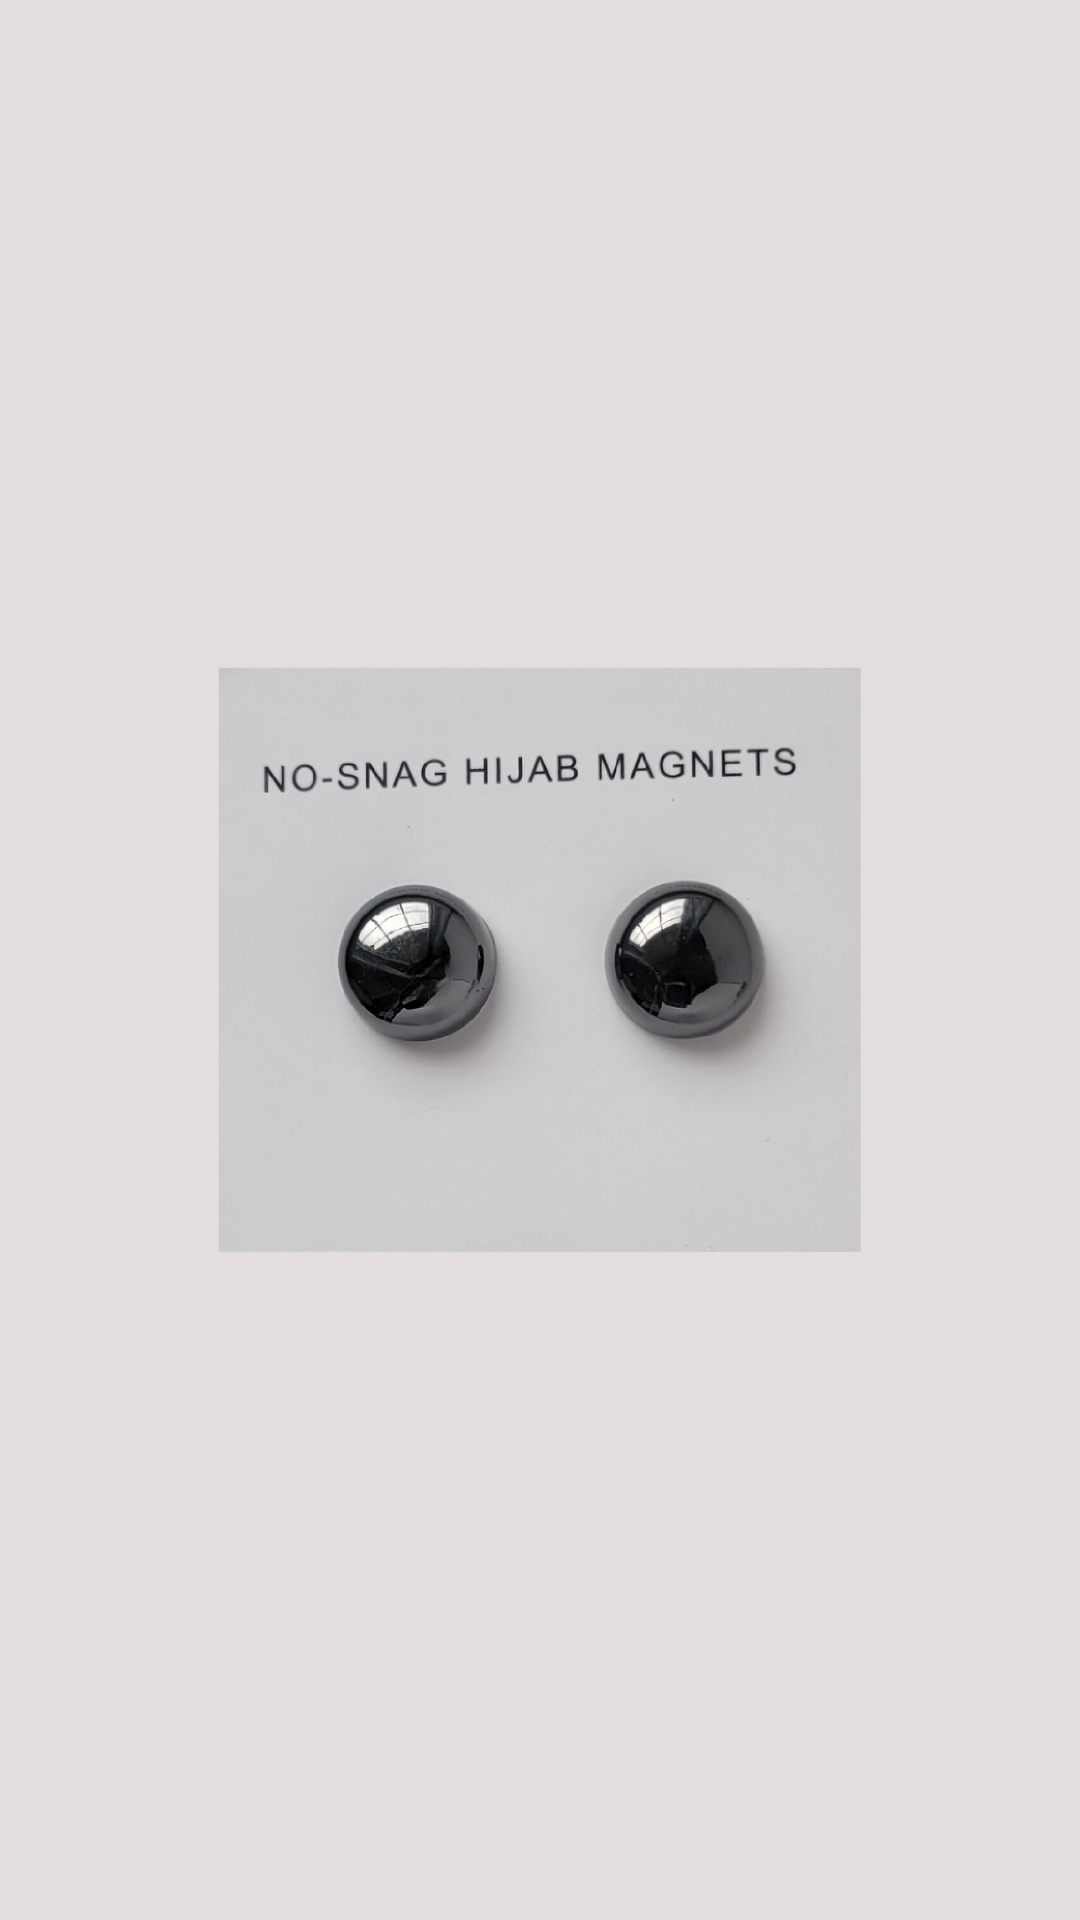 No-Snag Magnet - Black Chrome